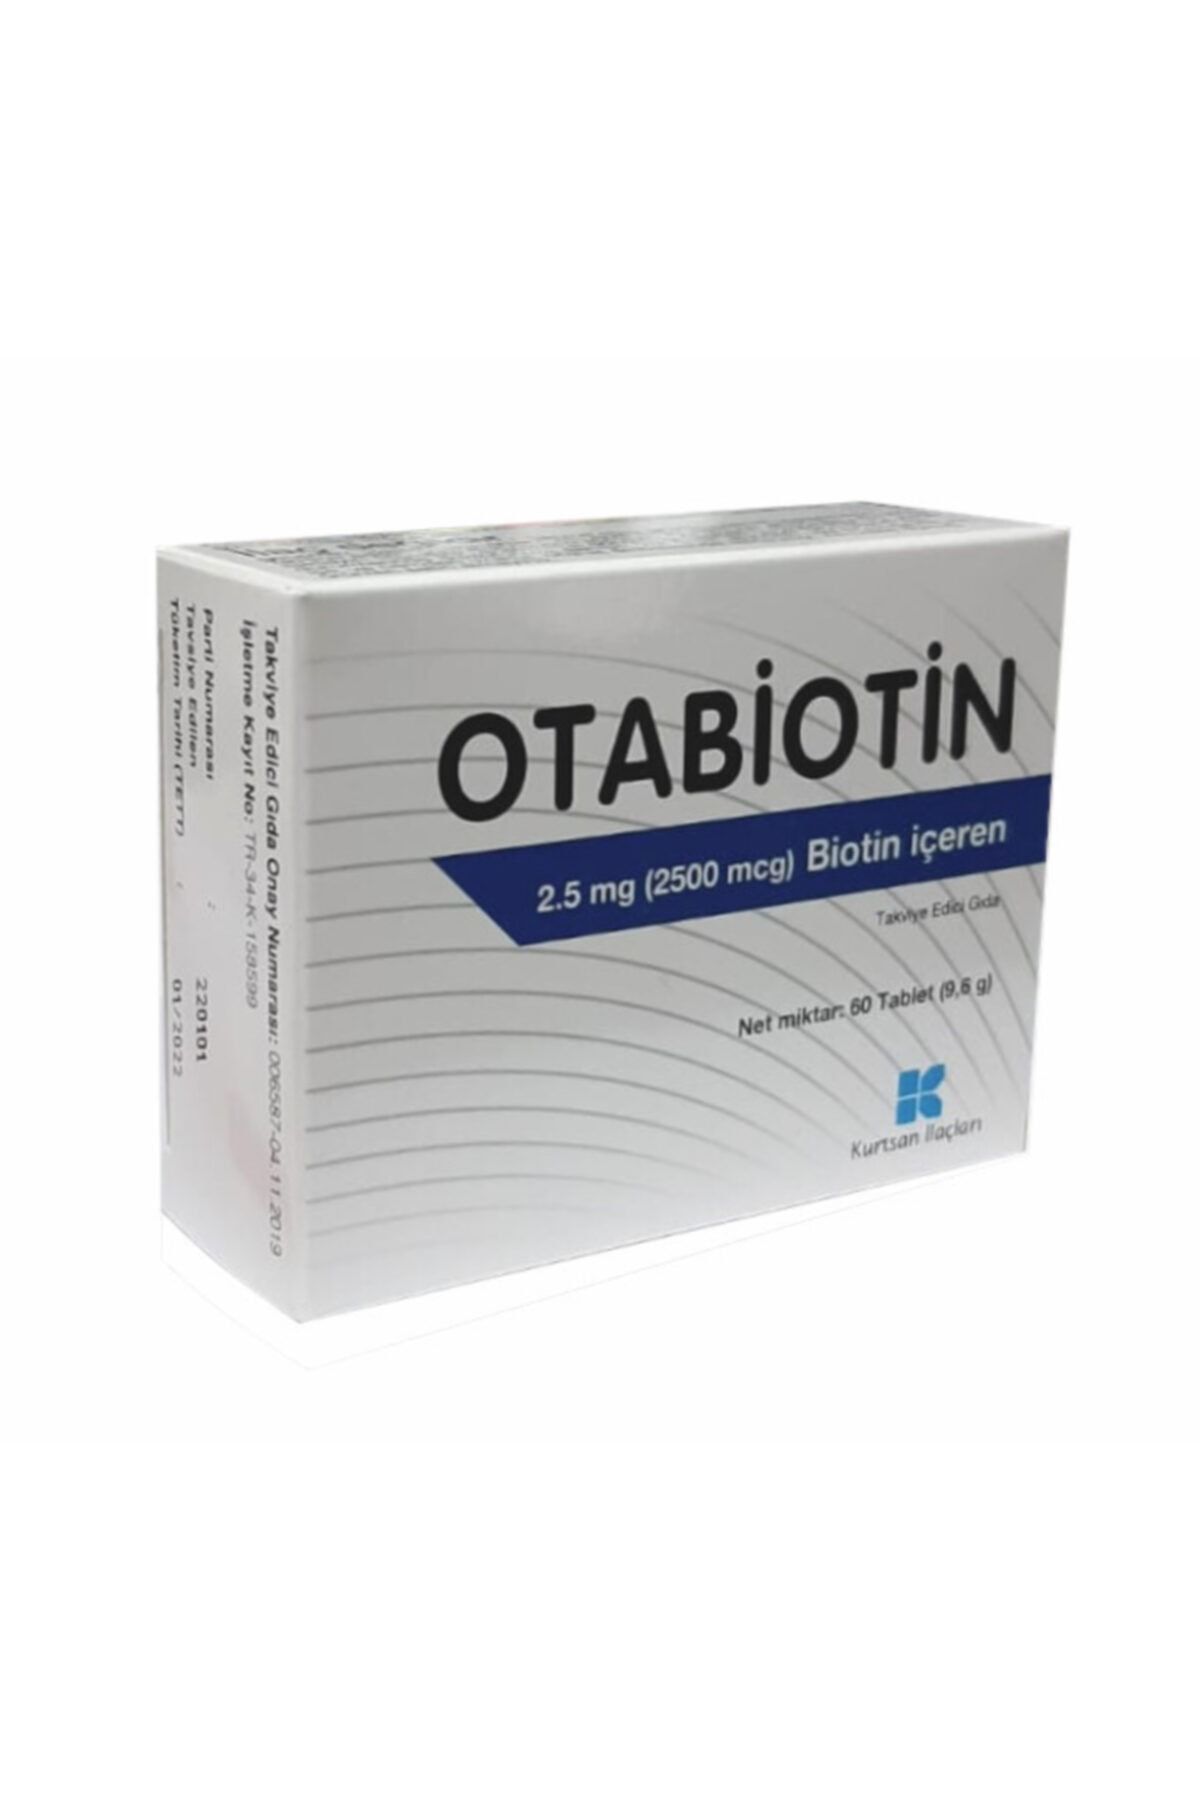 Kurtsan Otabiotin 2.5 Mg Biotin Içeren Takviye Edici Gıda 60 Tablet